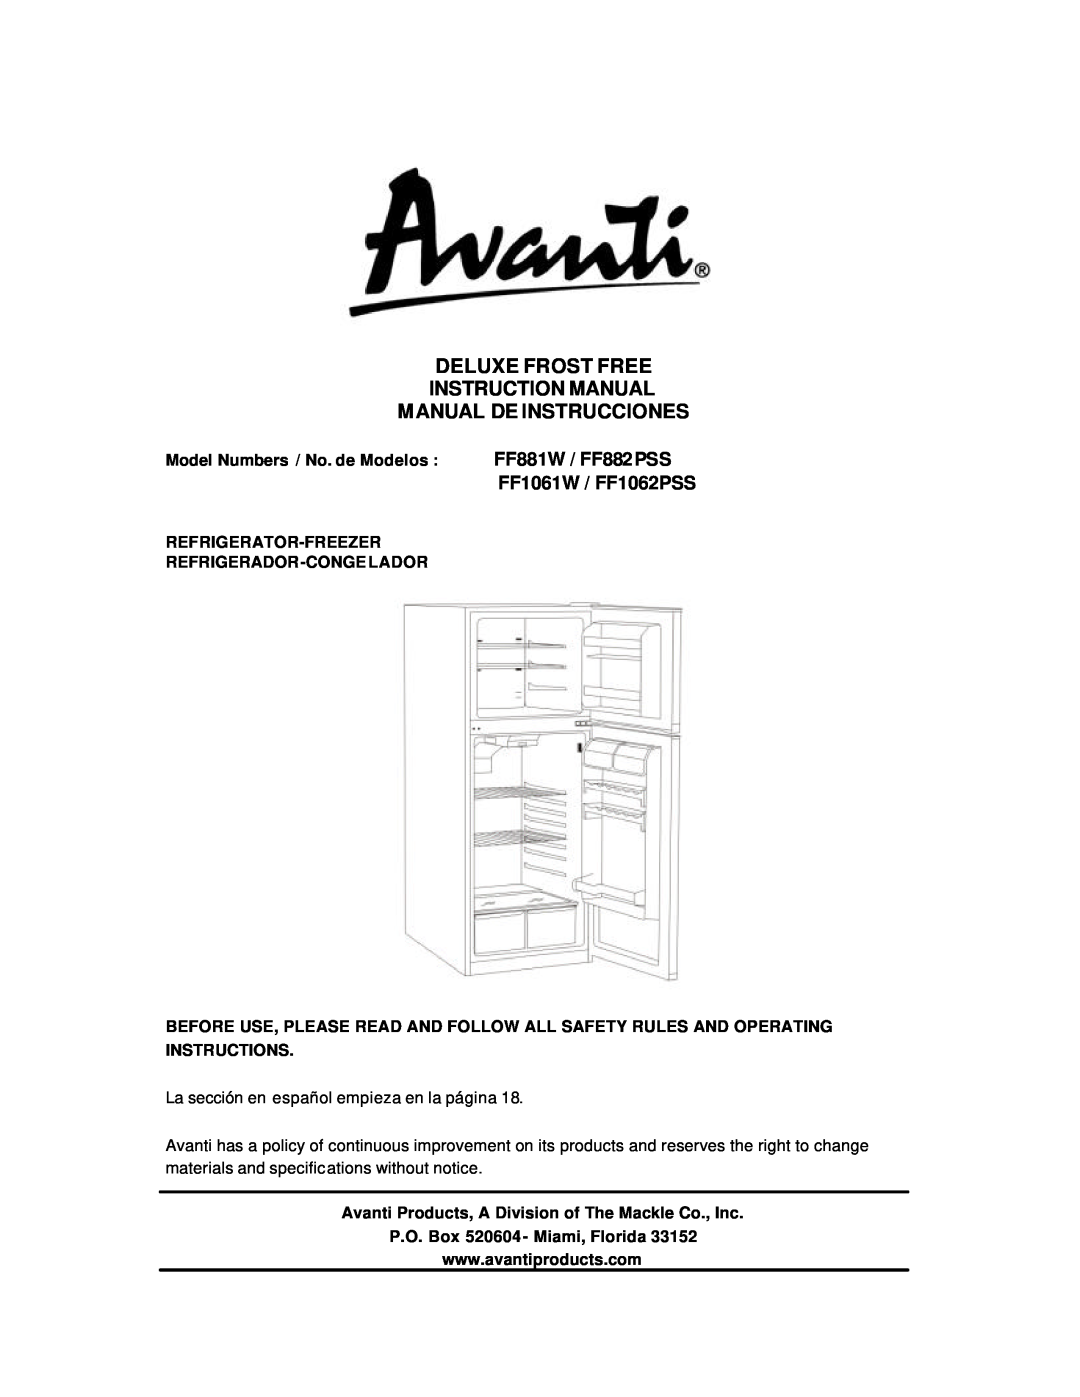 Avanti instruction manual Manual De Instrucciones, FF881W / FF882PSS, FF1061W / FF1062PSS 